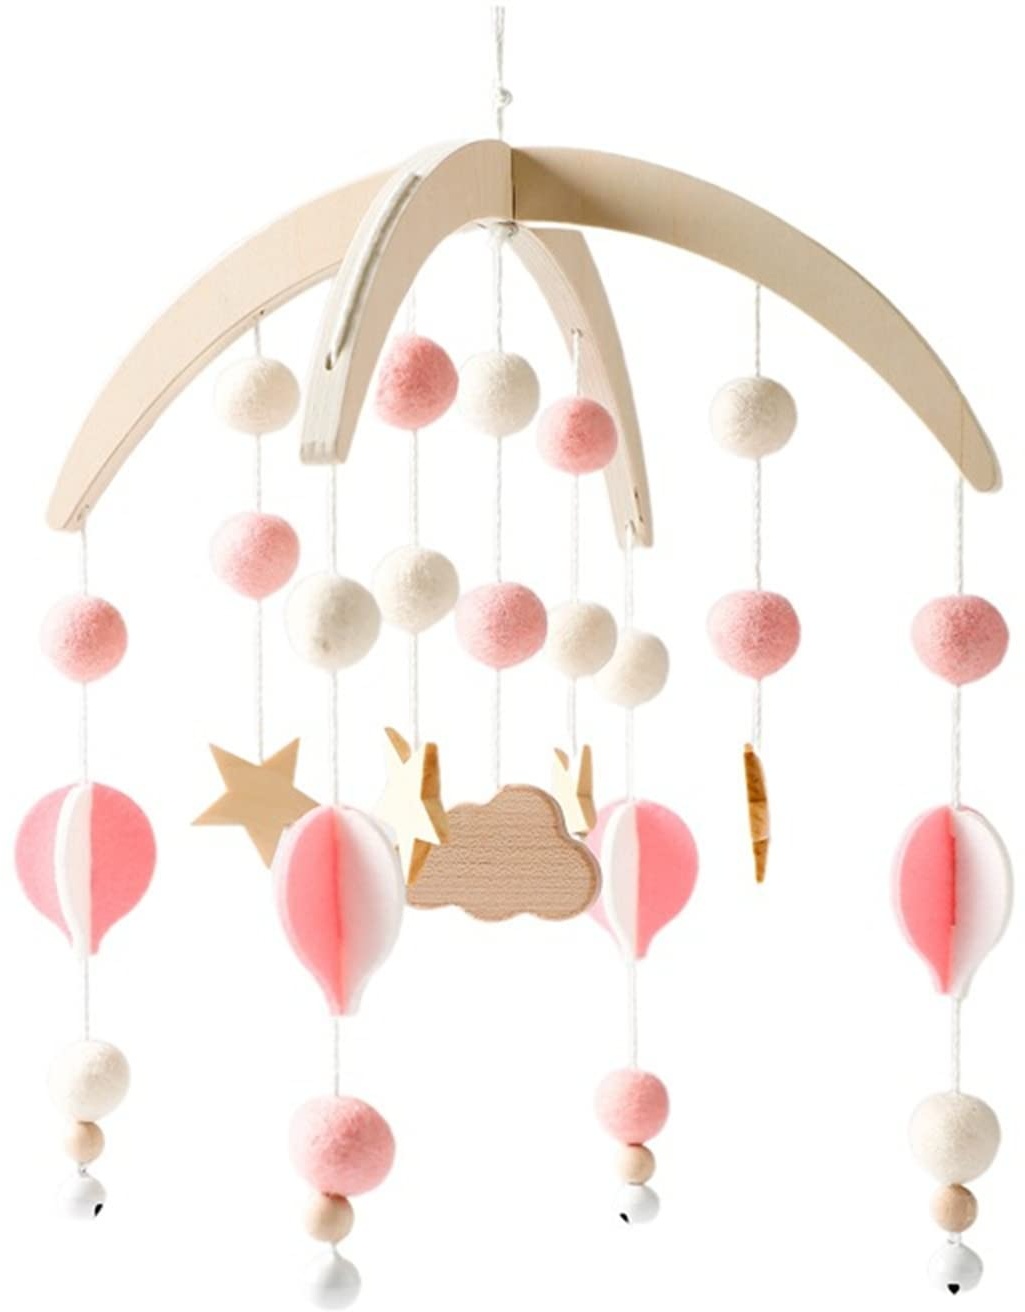 EXQULEG Babe Mobile Baby Windspiele mit Filzbällen Stern-Ballon Babyzimmer Holz Mobile Baby Neugeborene Jungen Mädchen Bettglocke Anhänger zum Aufhängen Babybett Kinderbett Deko (Rosa)